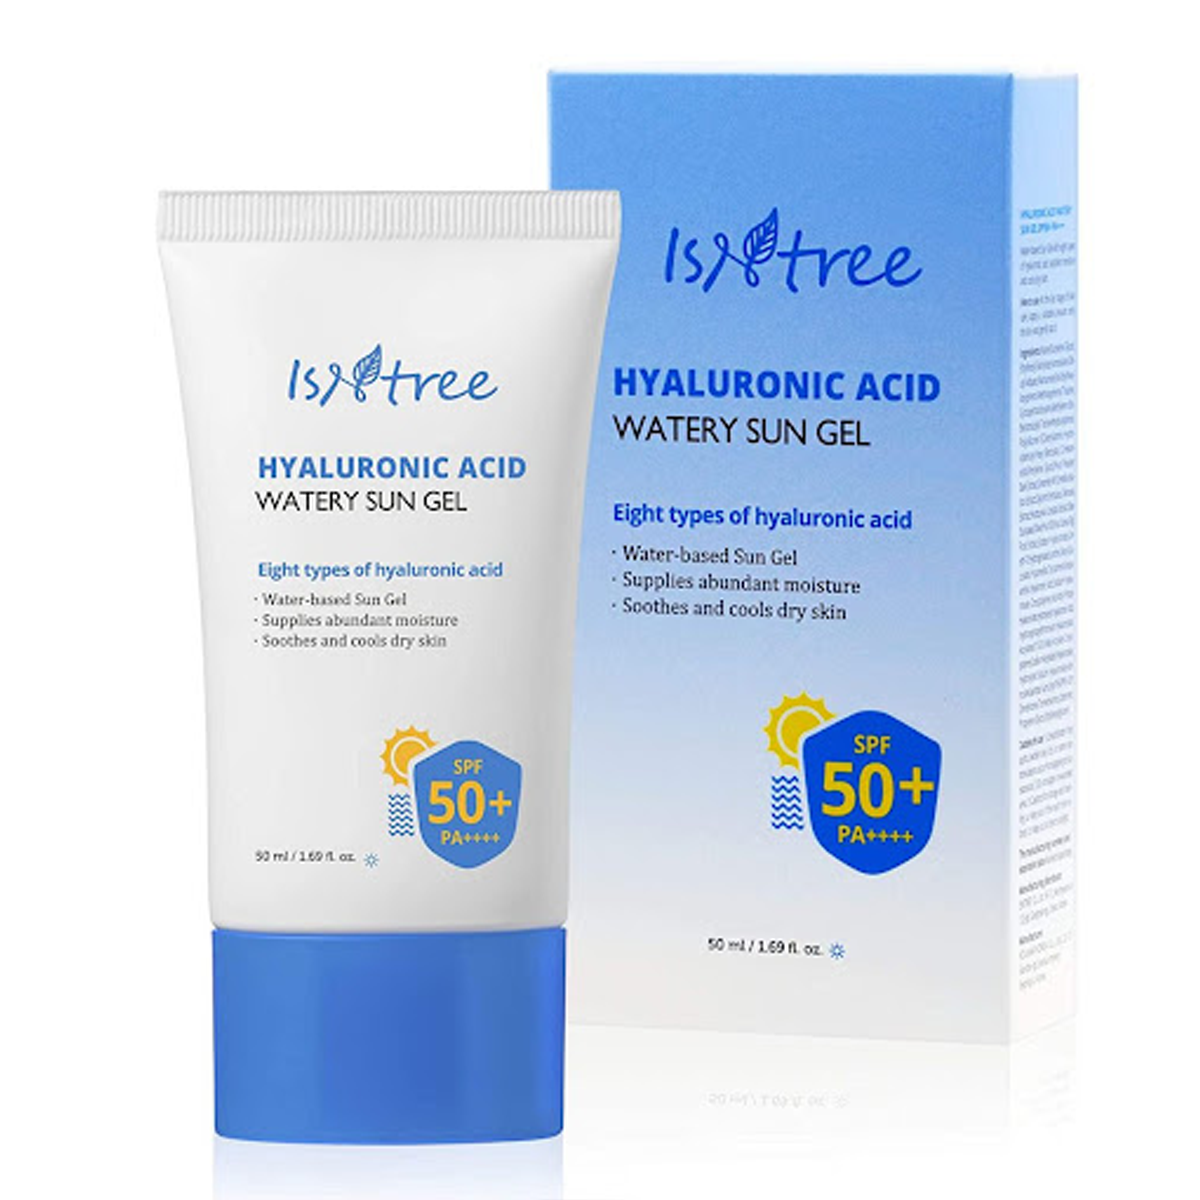 Instree Hyaluronic Acid Watery Sun Gel SPF50+ PA++++ 50ml